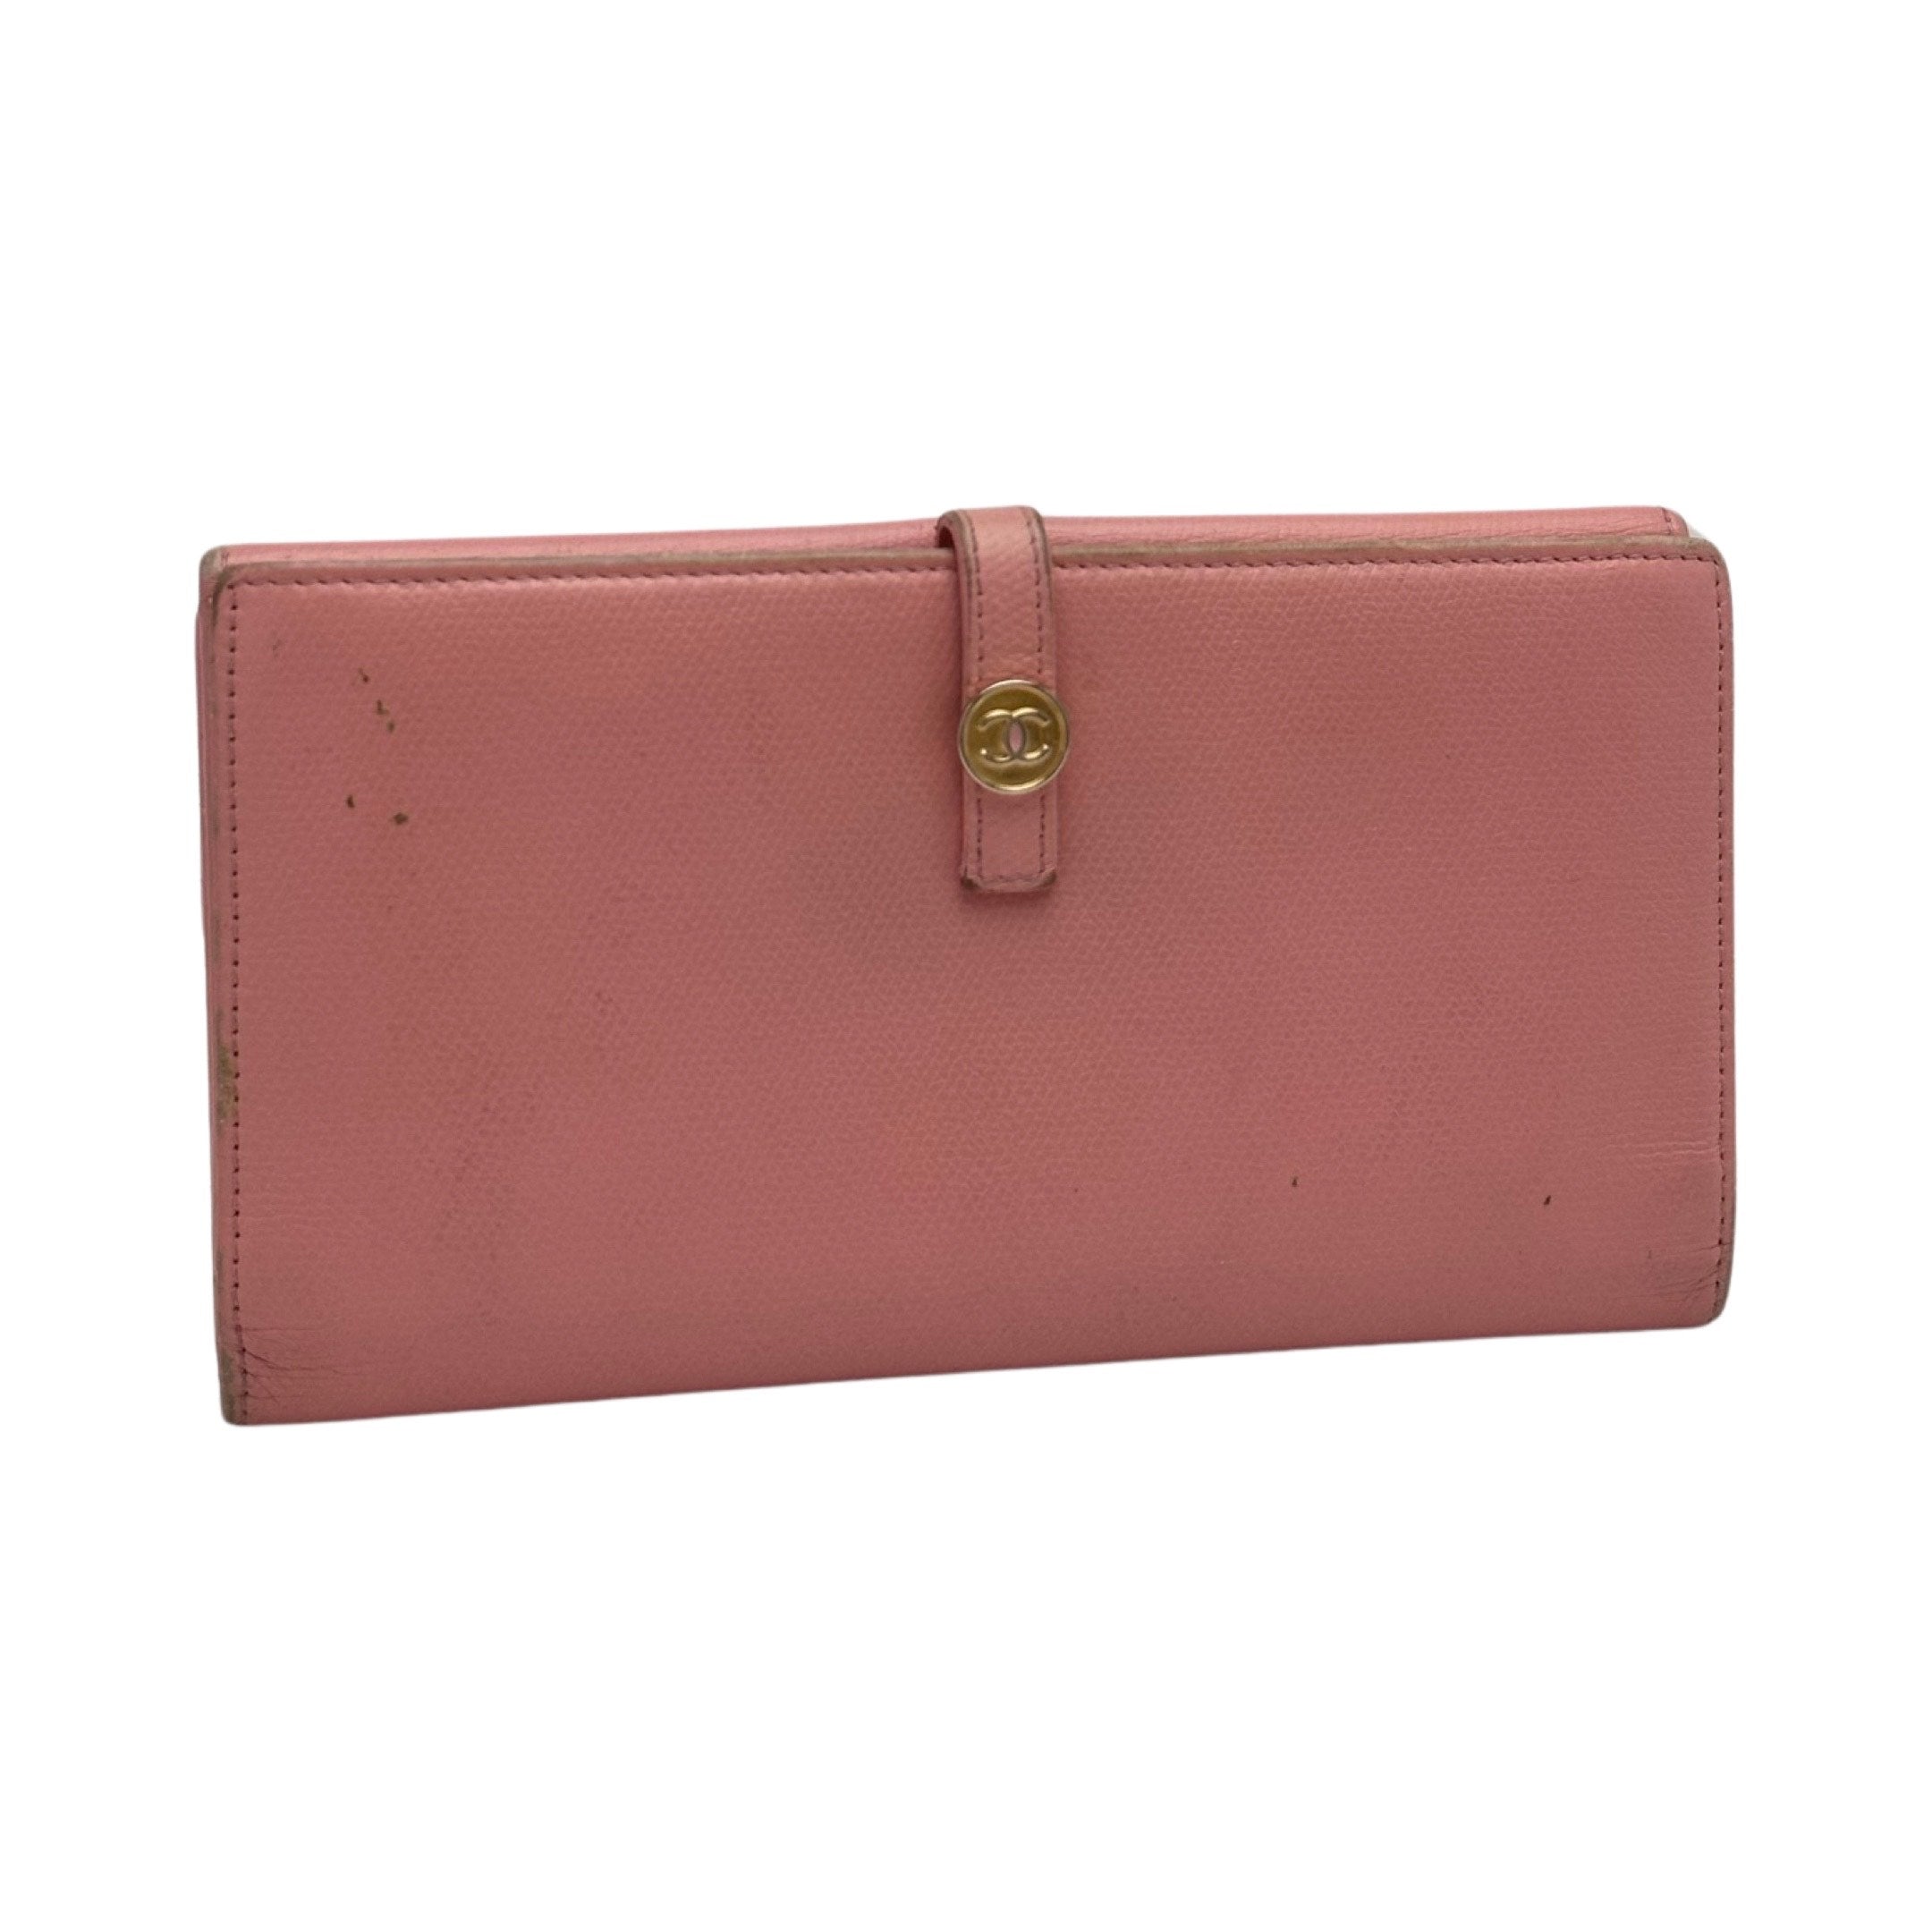 vintage chanel pink wallet